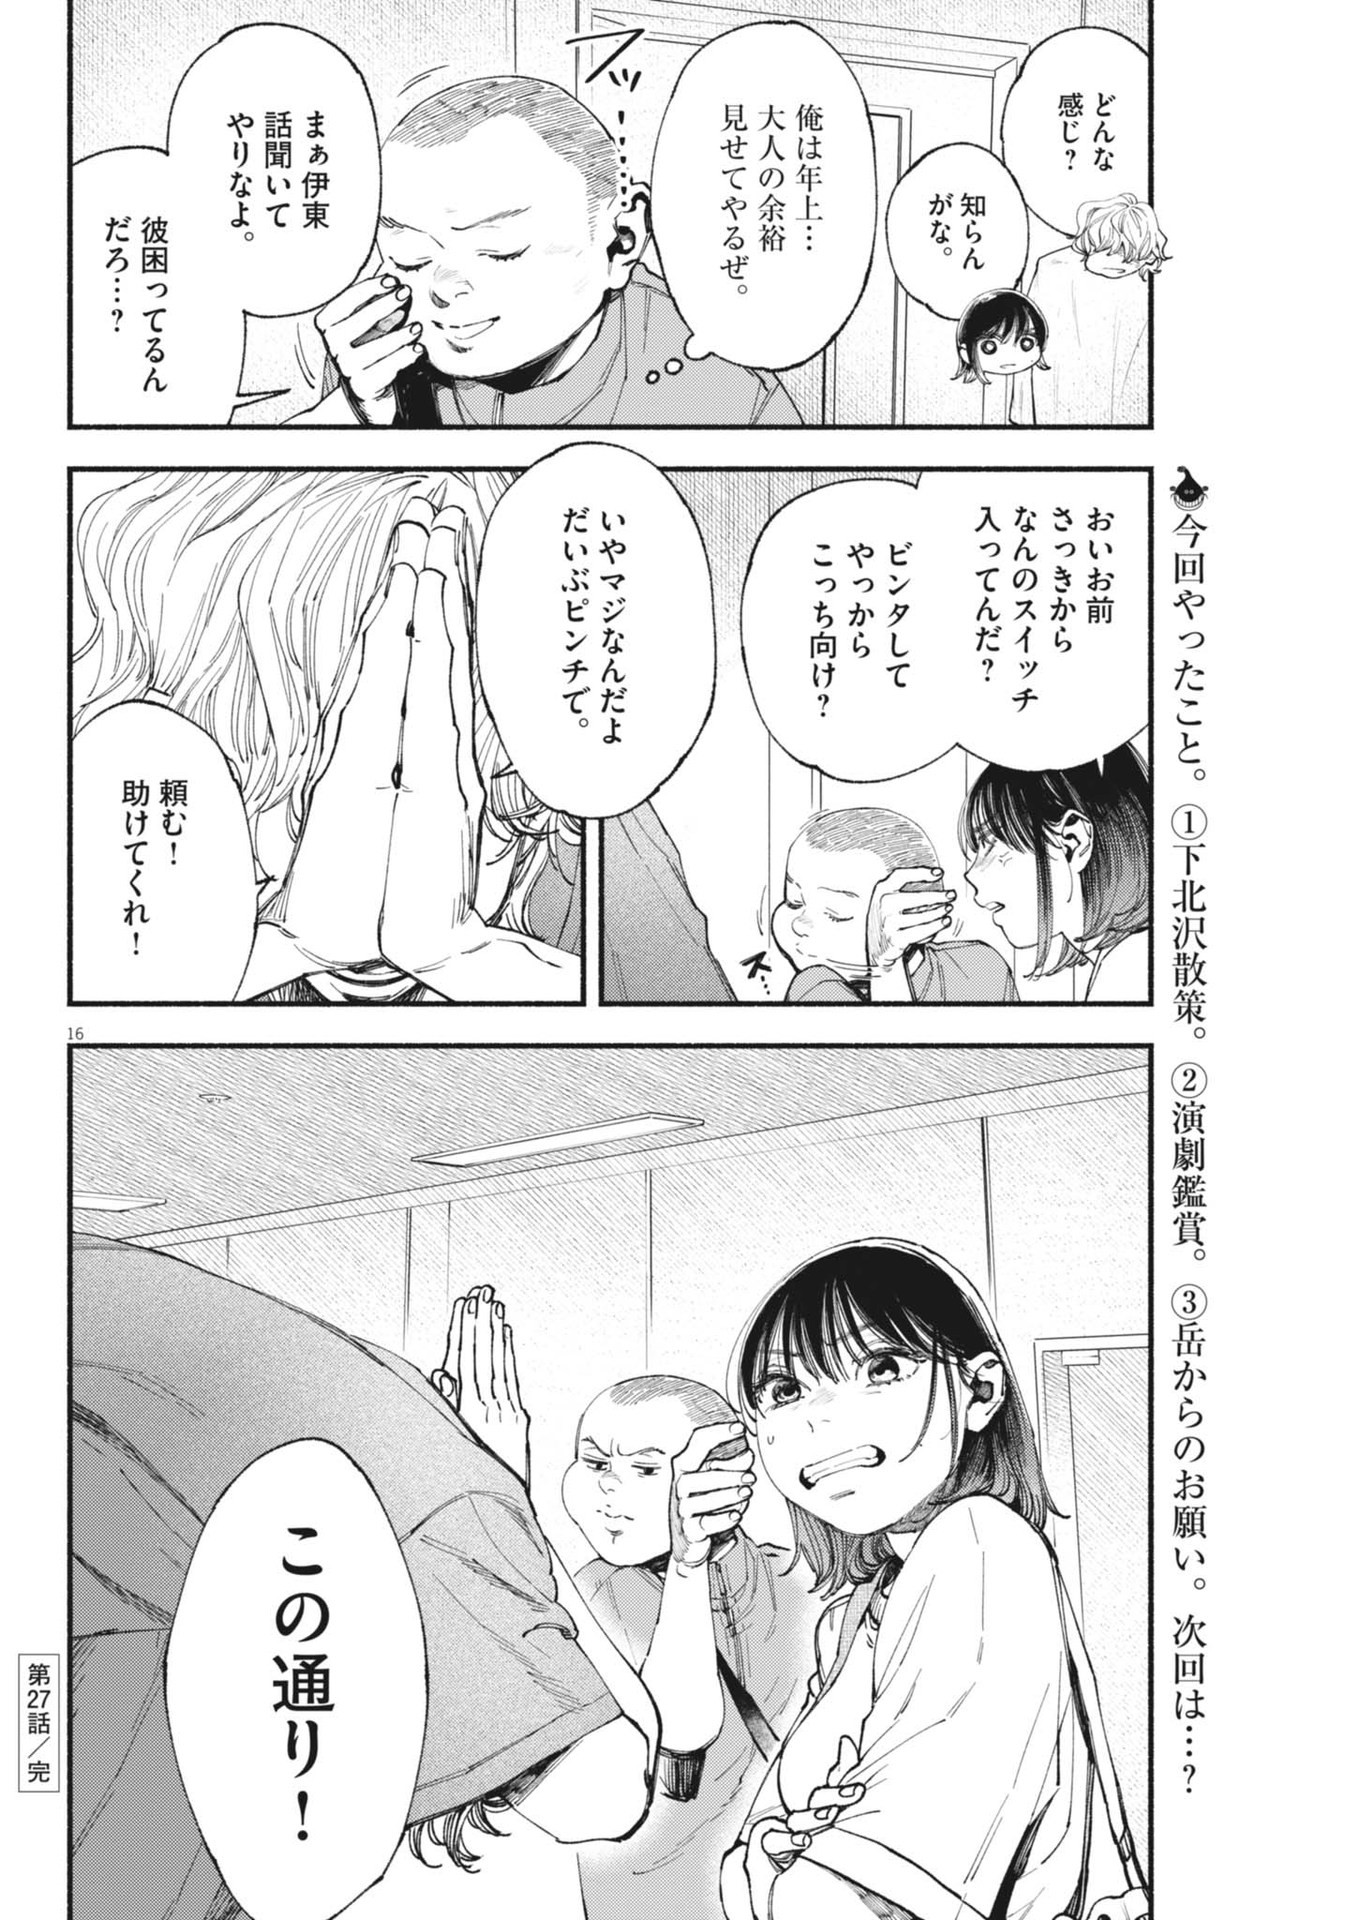 Konoyo wa Tatakau Kachi ga Aru  - Chapter 27 - Page 16